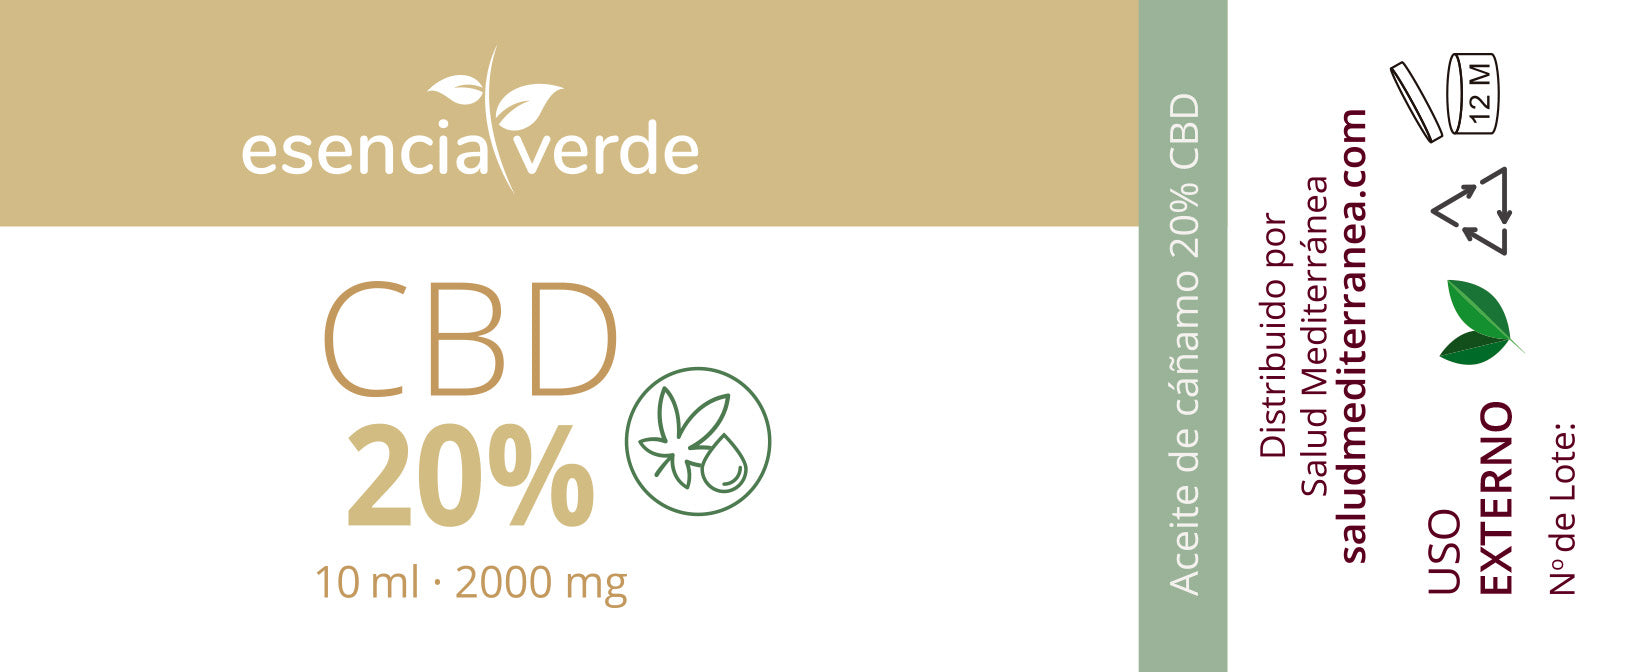 Óleo CBD 20% - 10 ml. essência verde